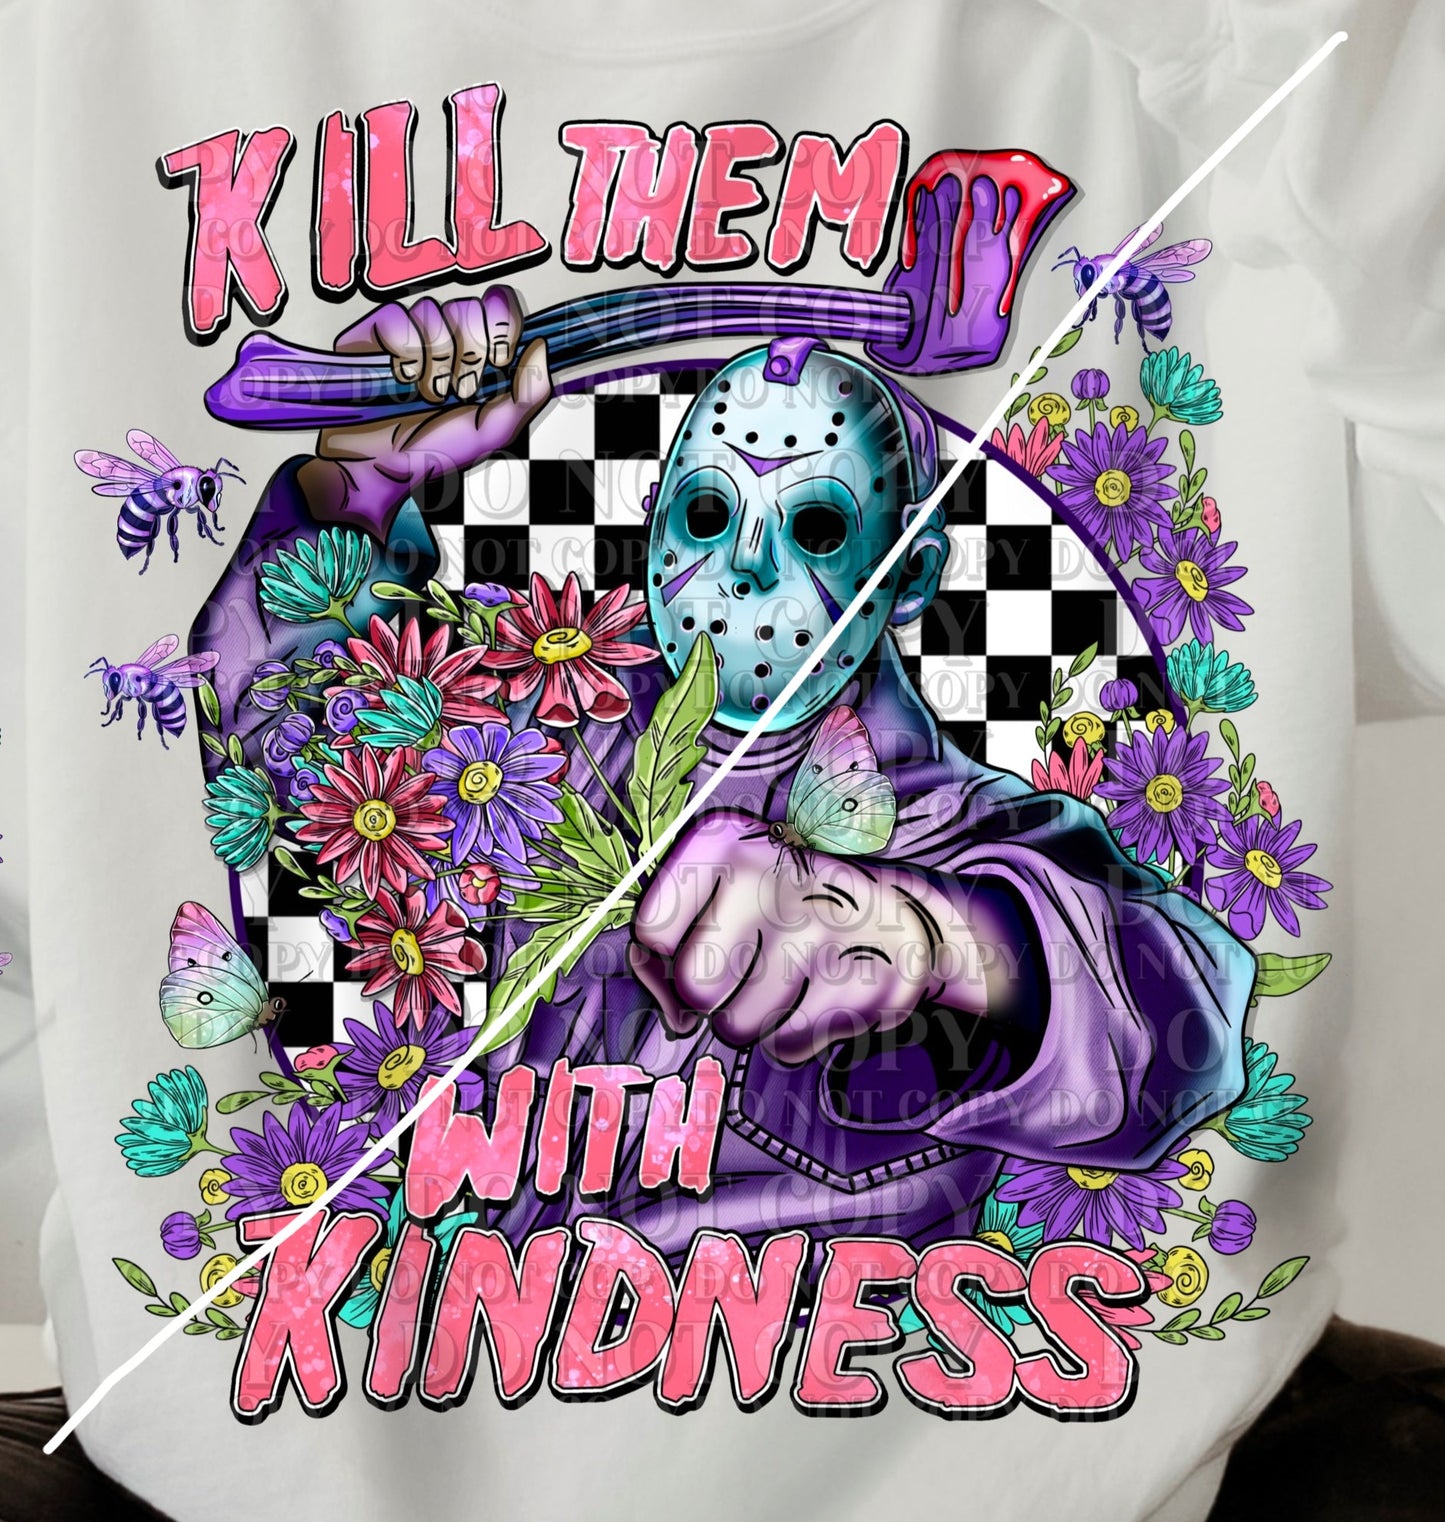 DTF Transfer Jason Kill Them w/ Kindness Pink